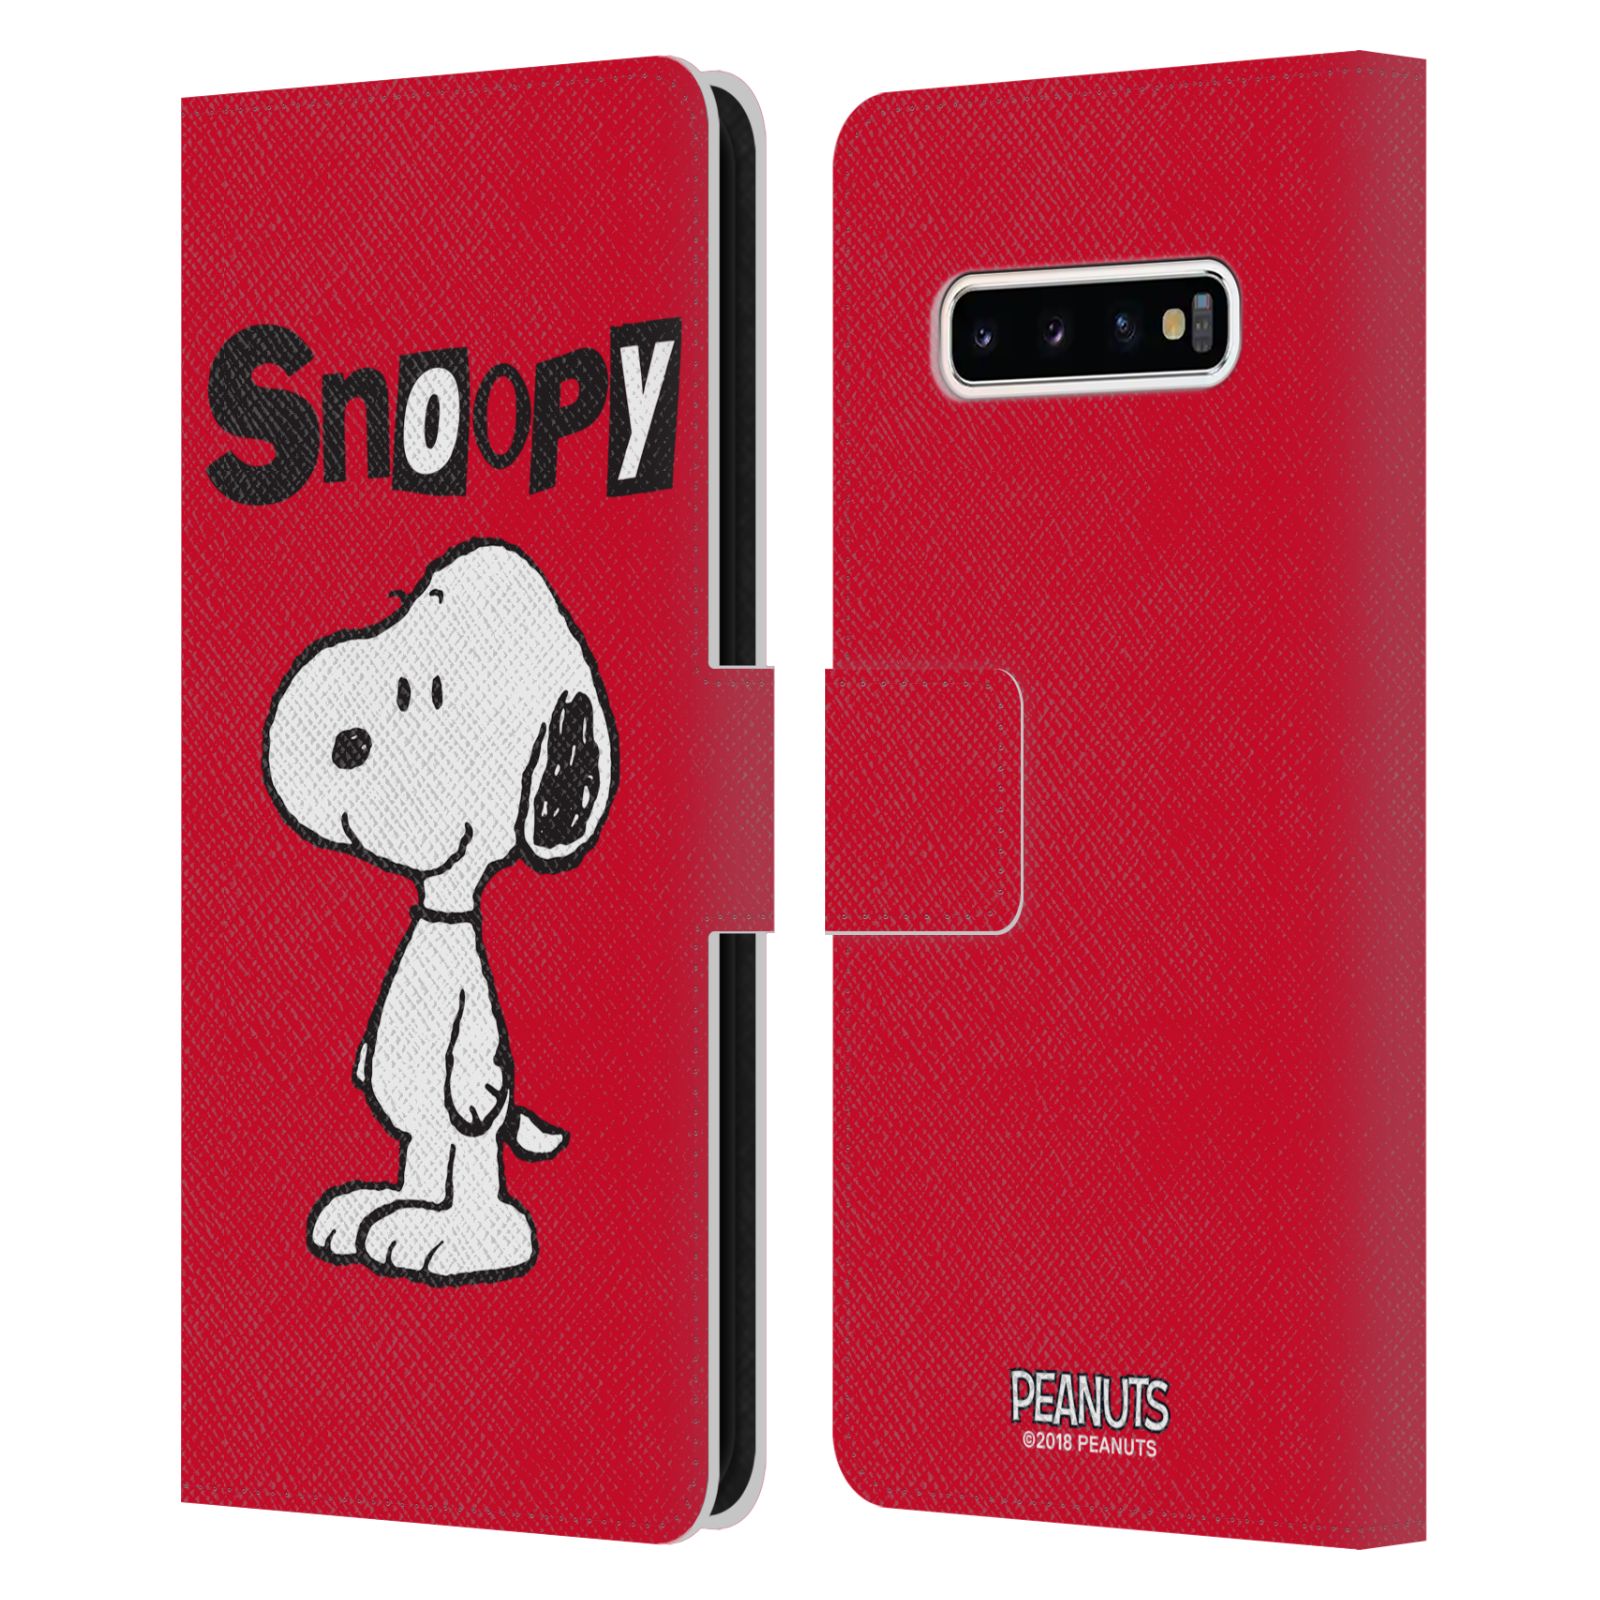 Pouzdro na mobil Samsung Galaxy S10+ - HEAD CASE - Peanuts - Snoopy červená